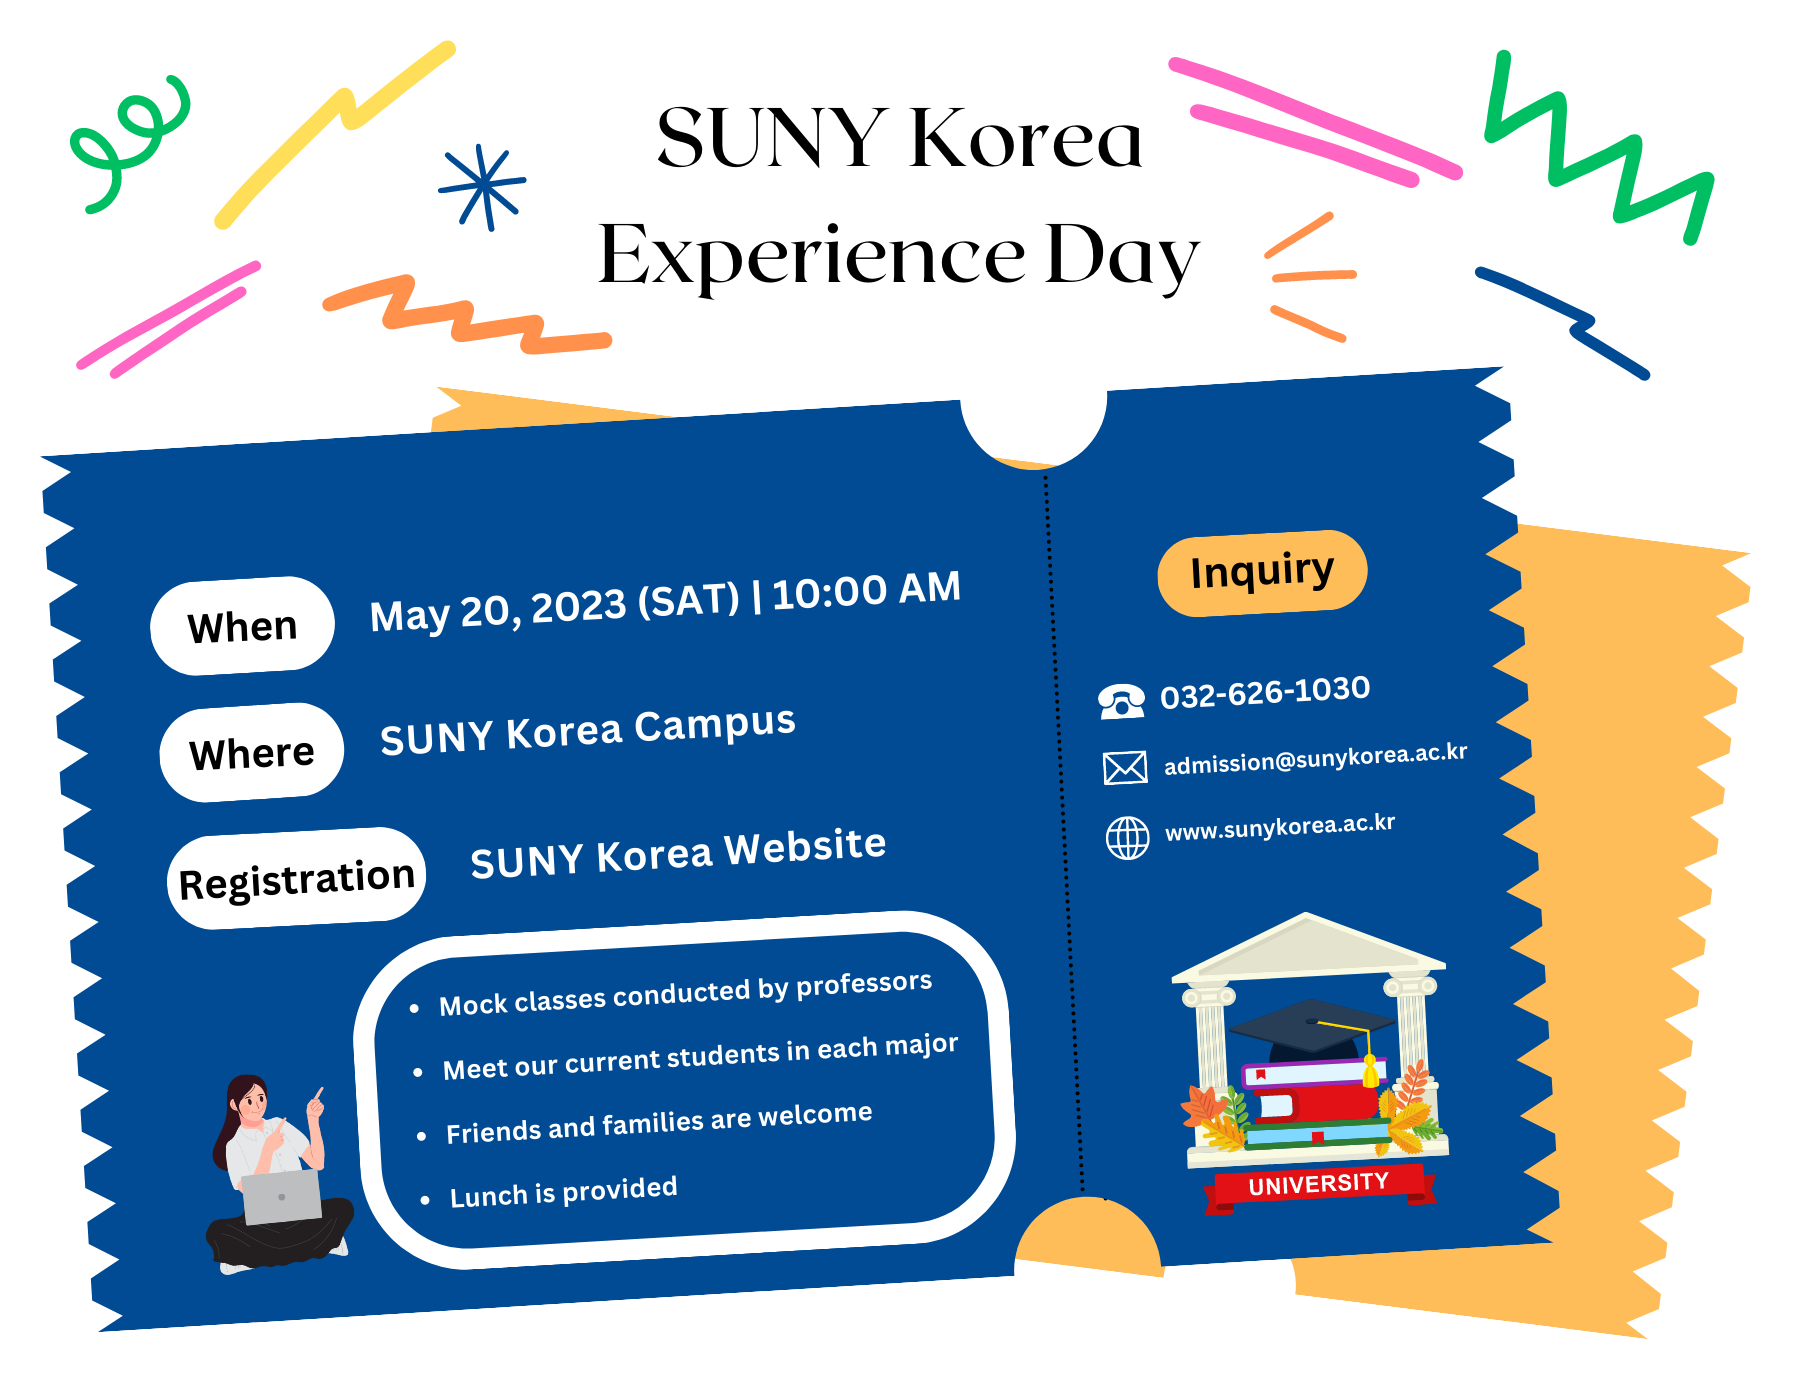 SUNY Korea Experience Day image